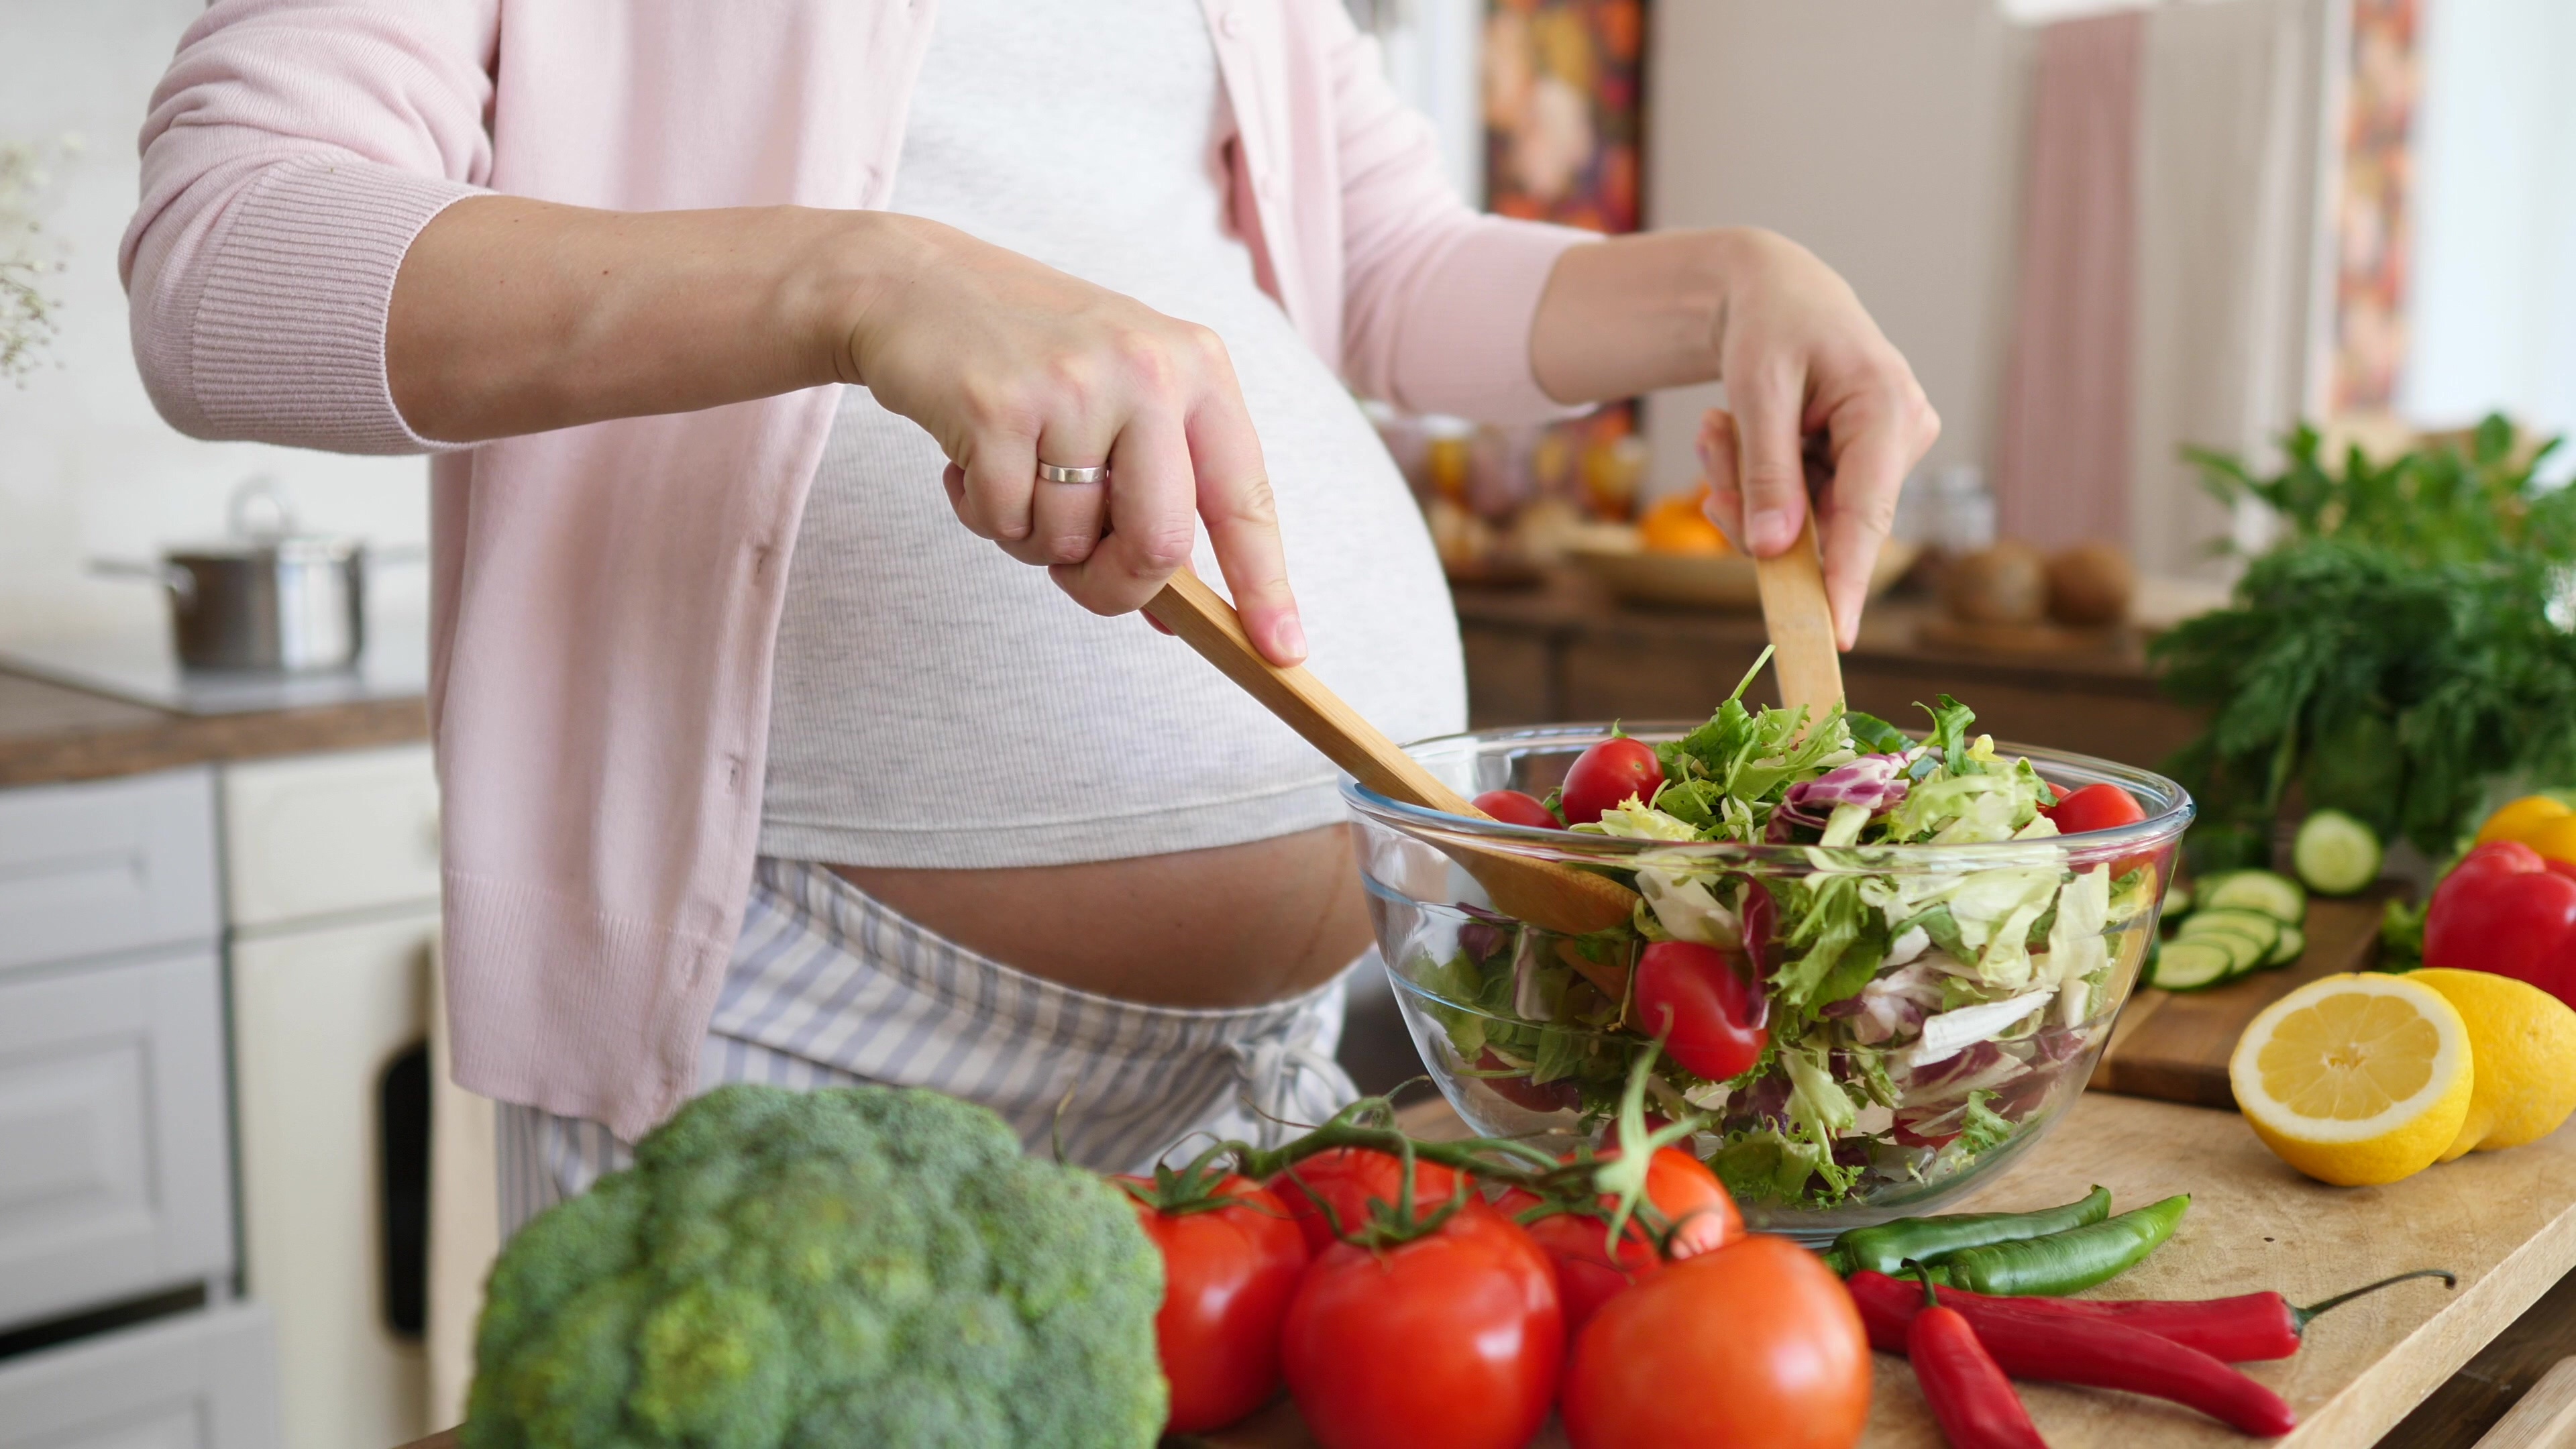 Adhérer à des habitudes et à un régime alimentaires sains, a un impact certain sur les résultats du traitement de l'infertilité (Visuel Adobe Stock 310402950)